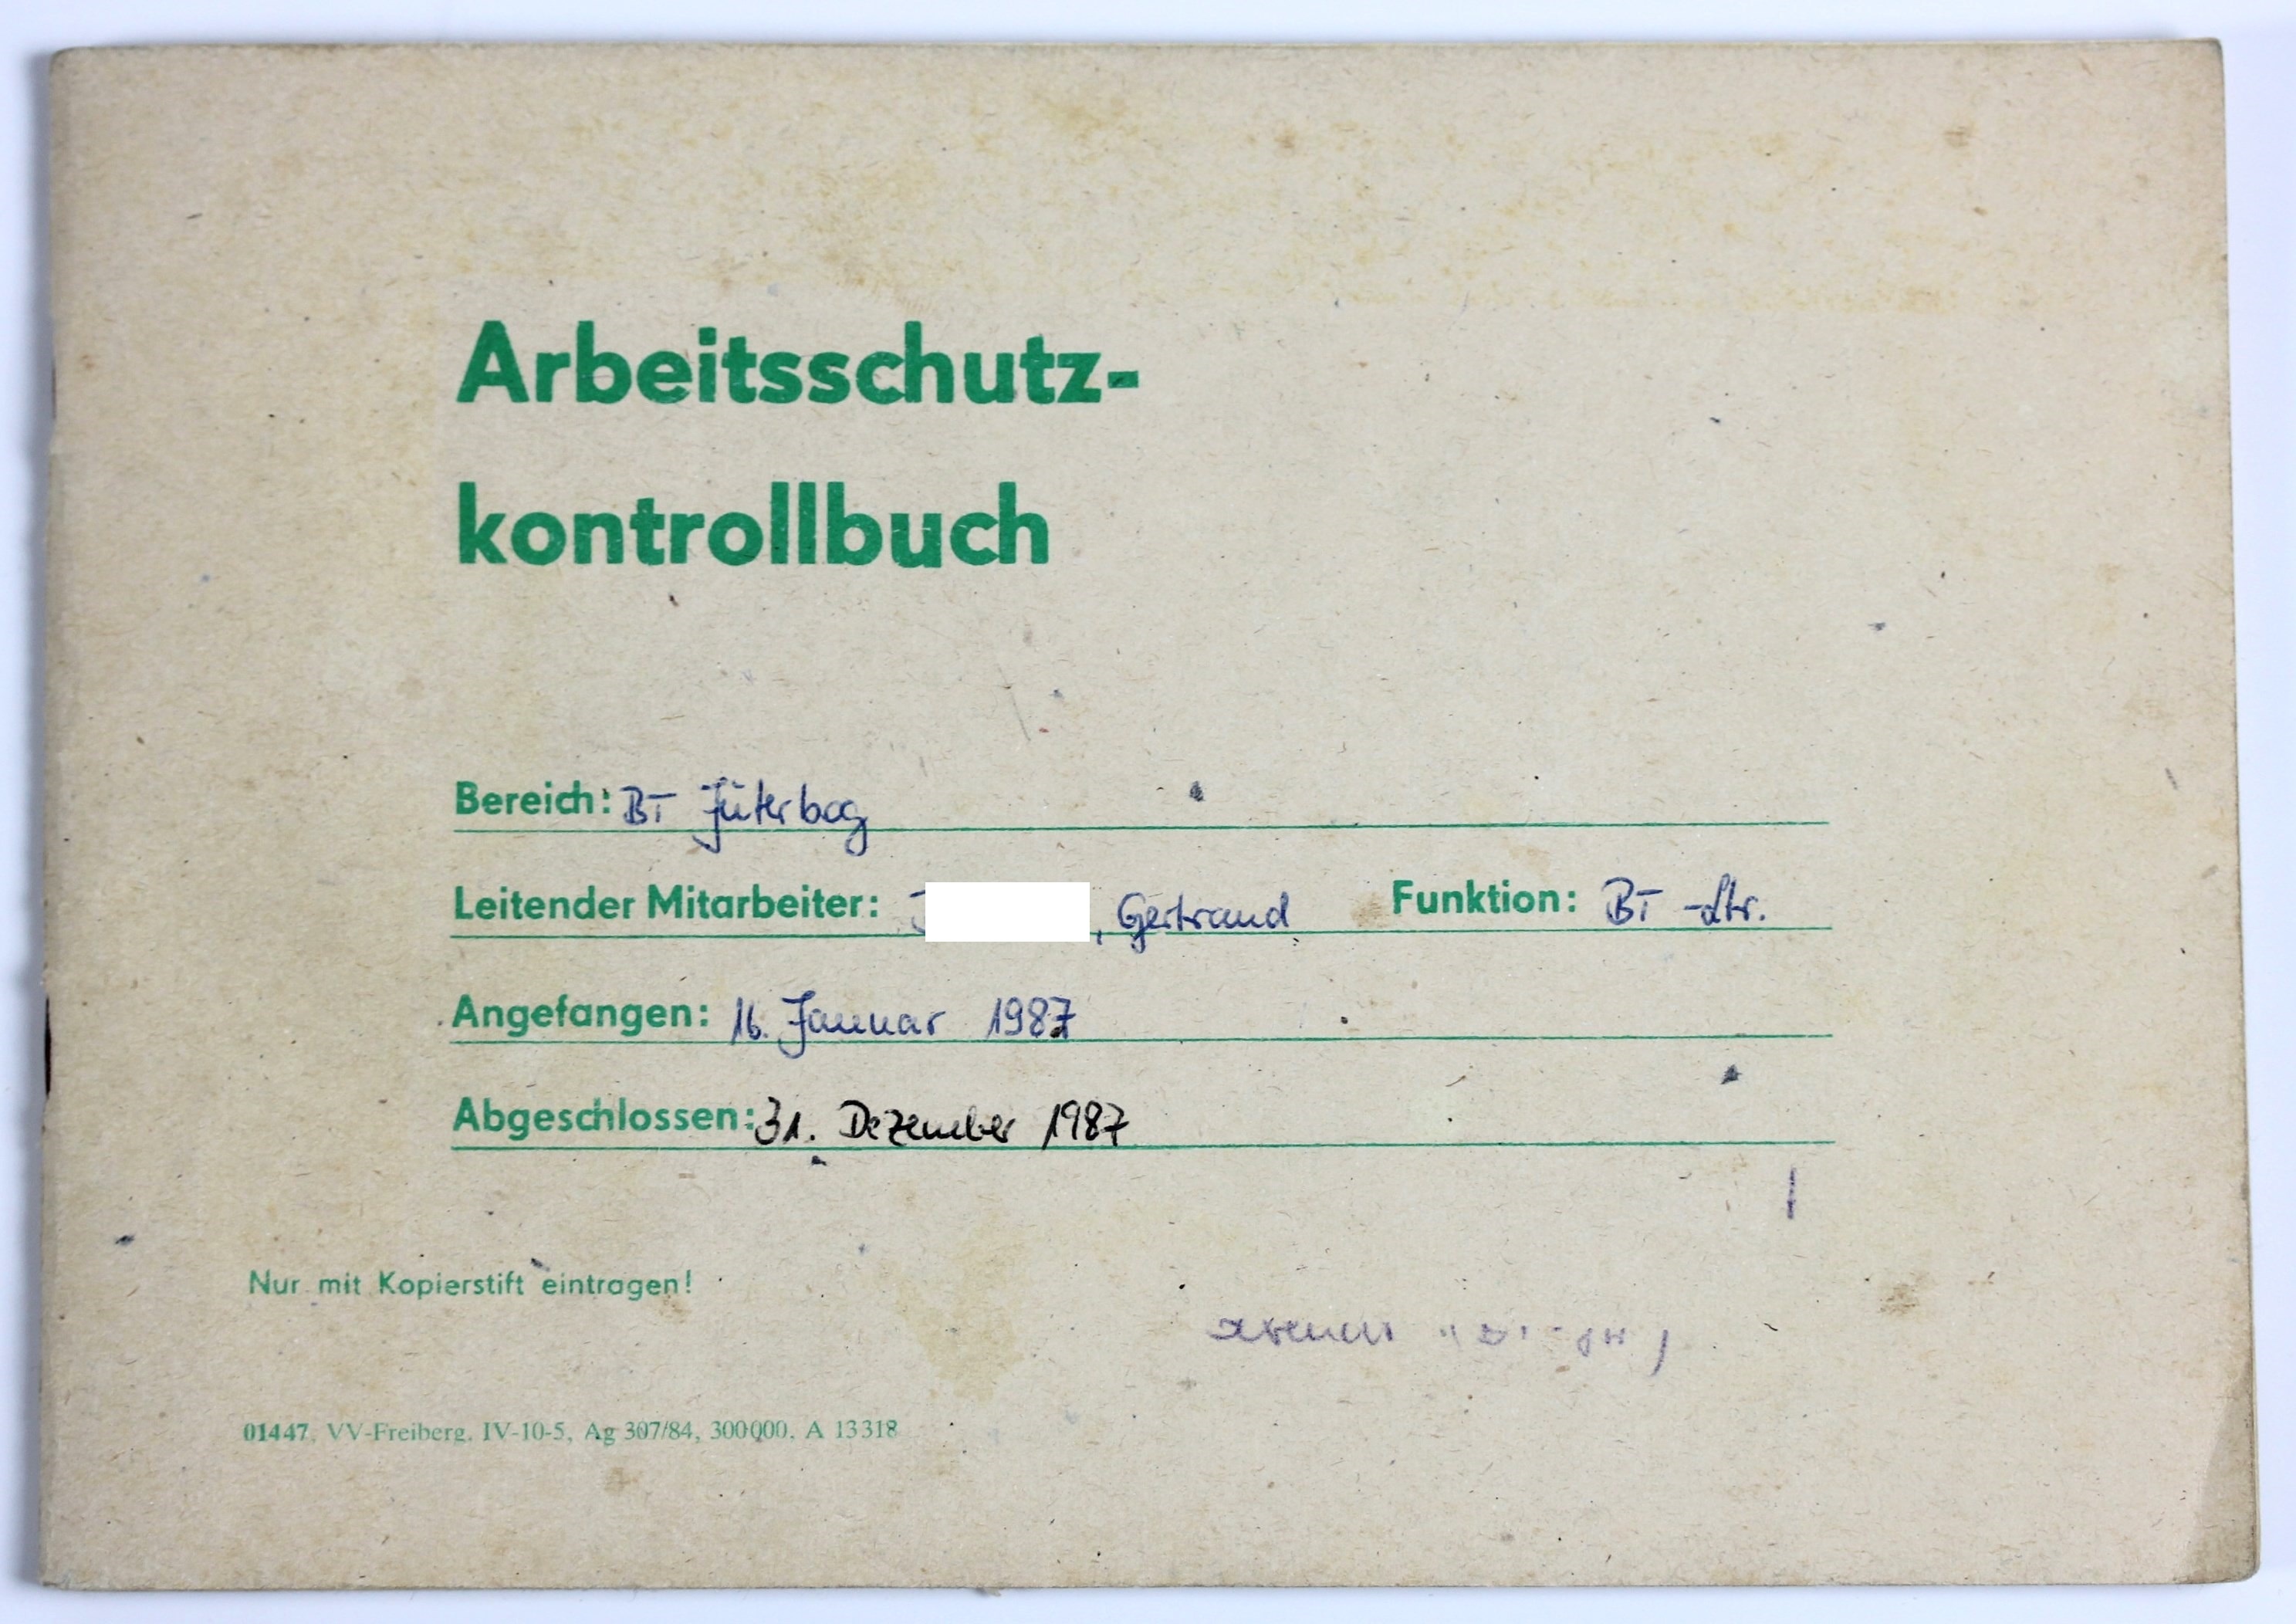 Kontrollbuch für Arbeitsschutz (Museum Utopie und Alltag. Alltagskultur und Kunst aus der DDR CC BY-NC-SA)